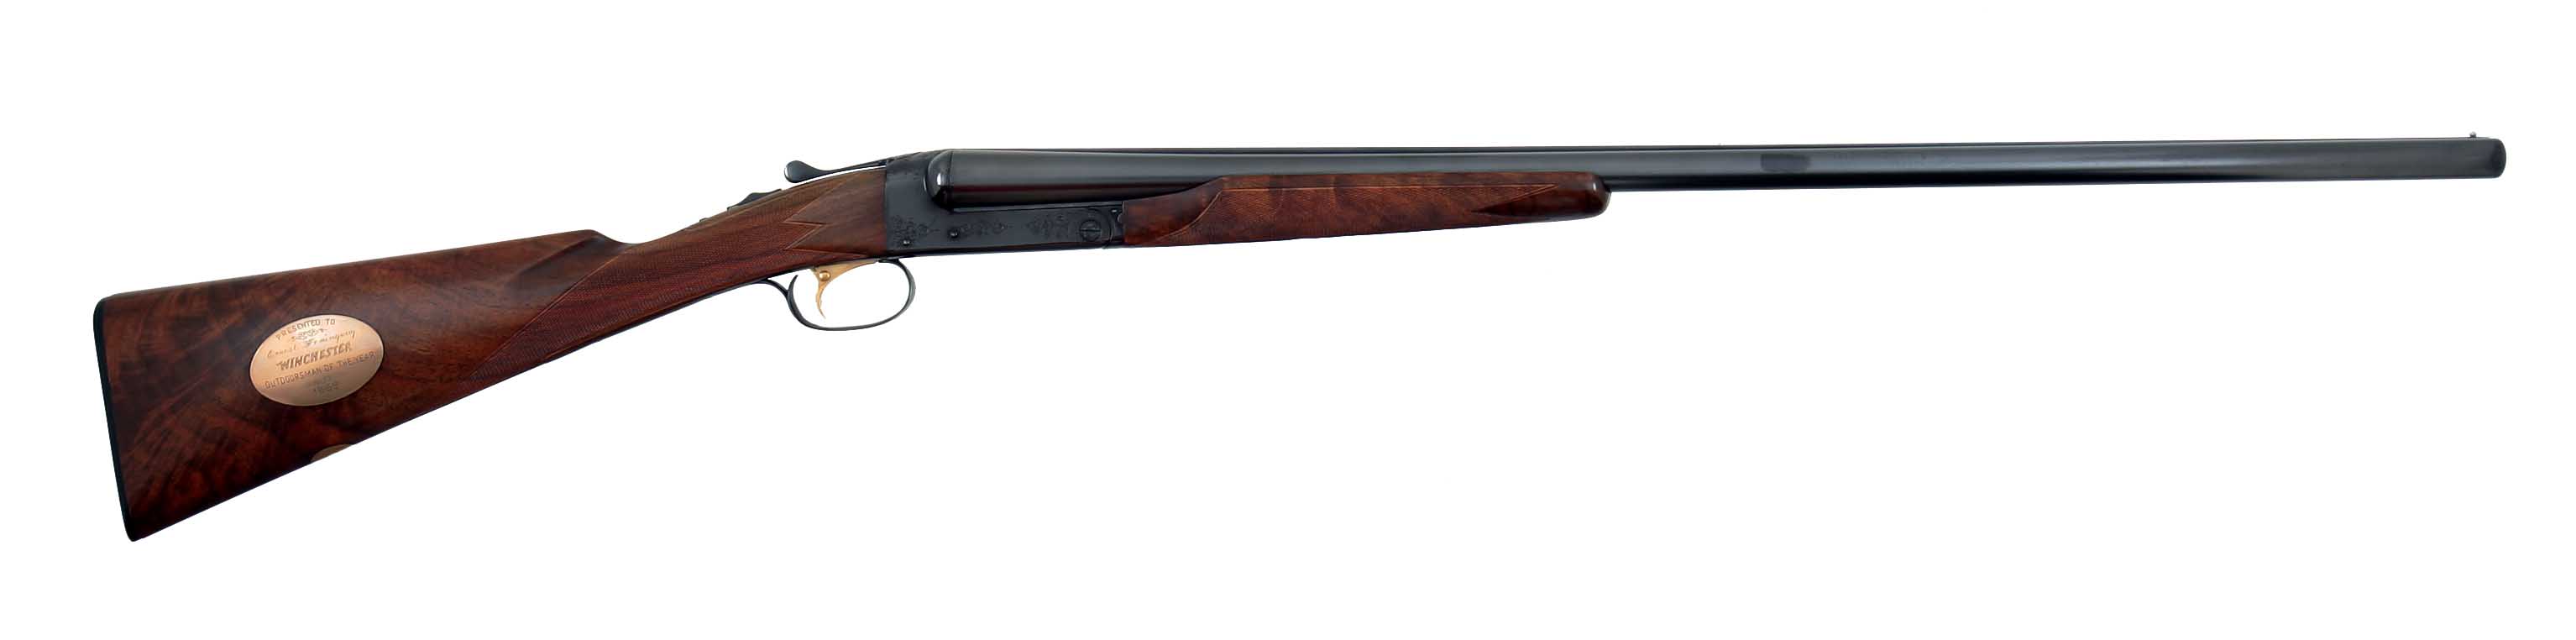 Hemingway's rifle